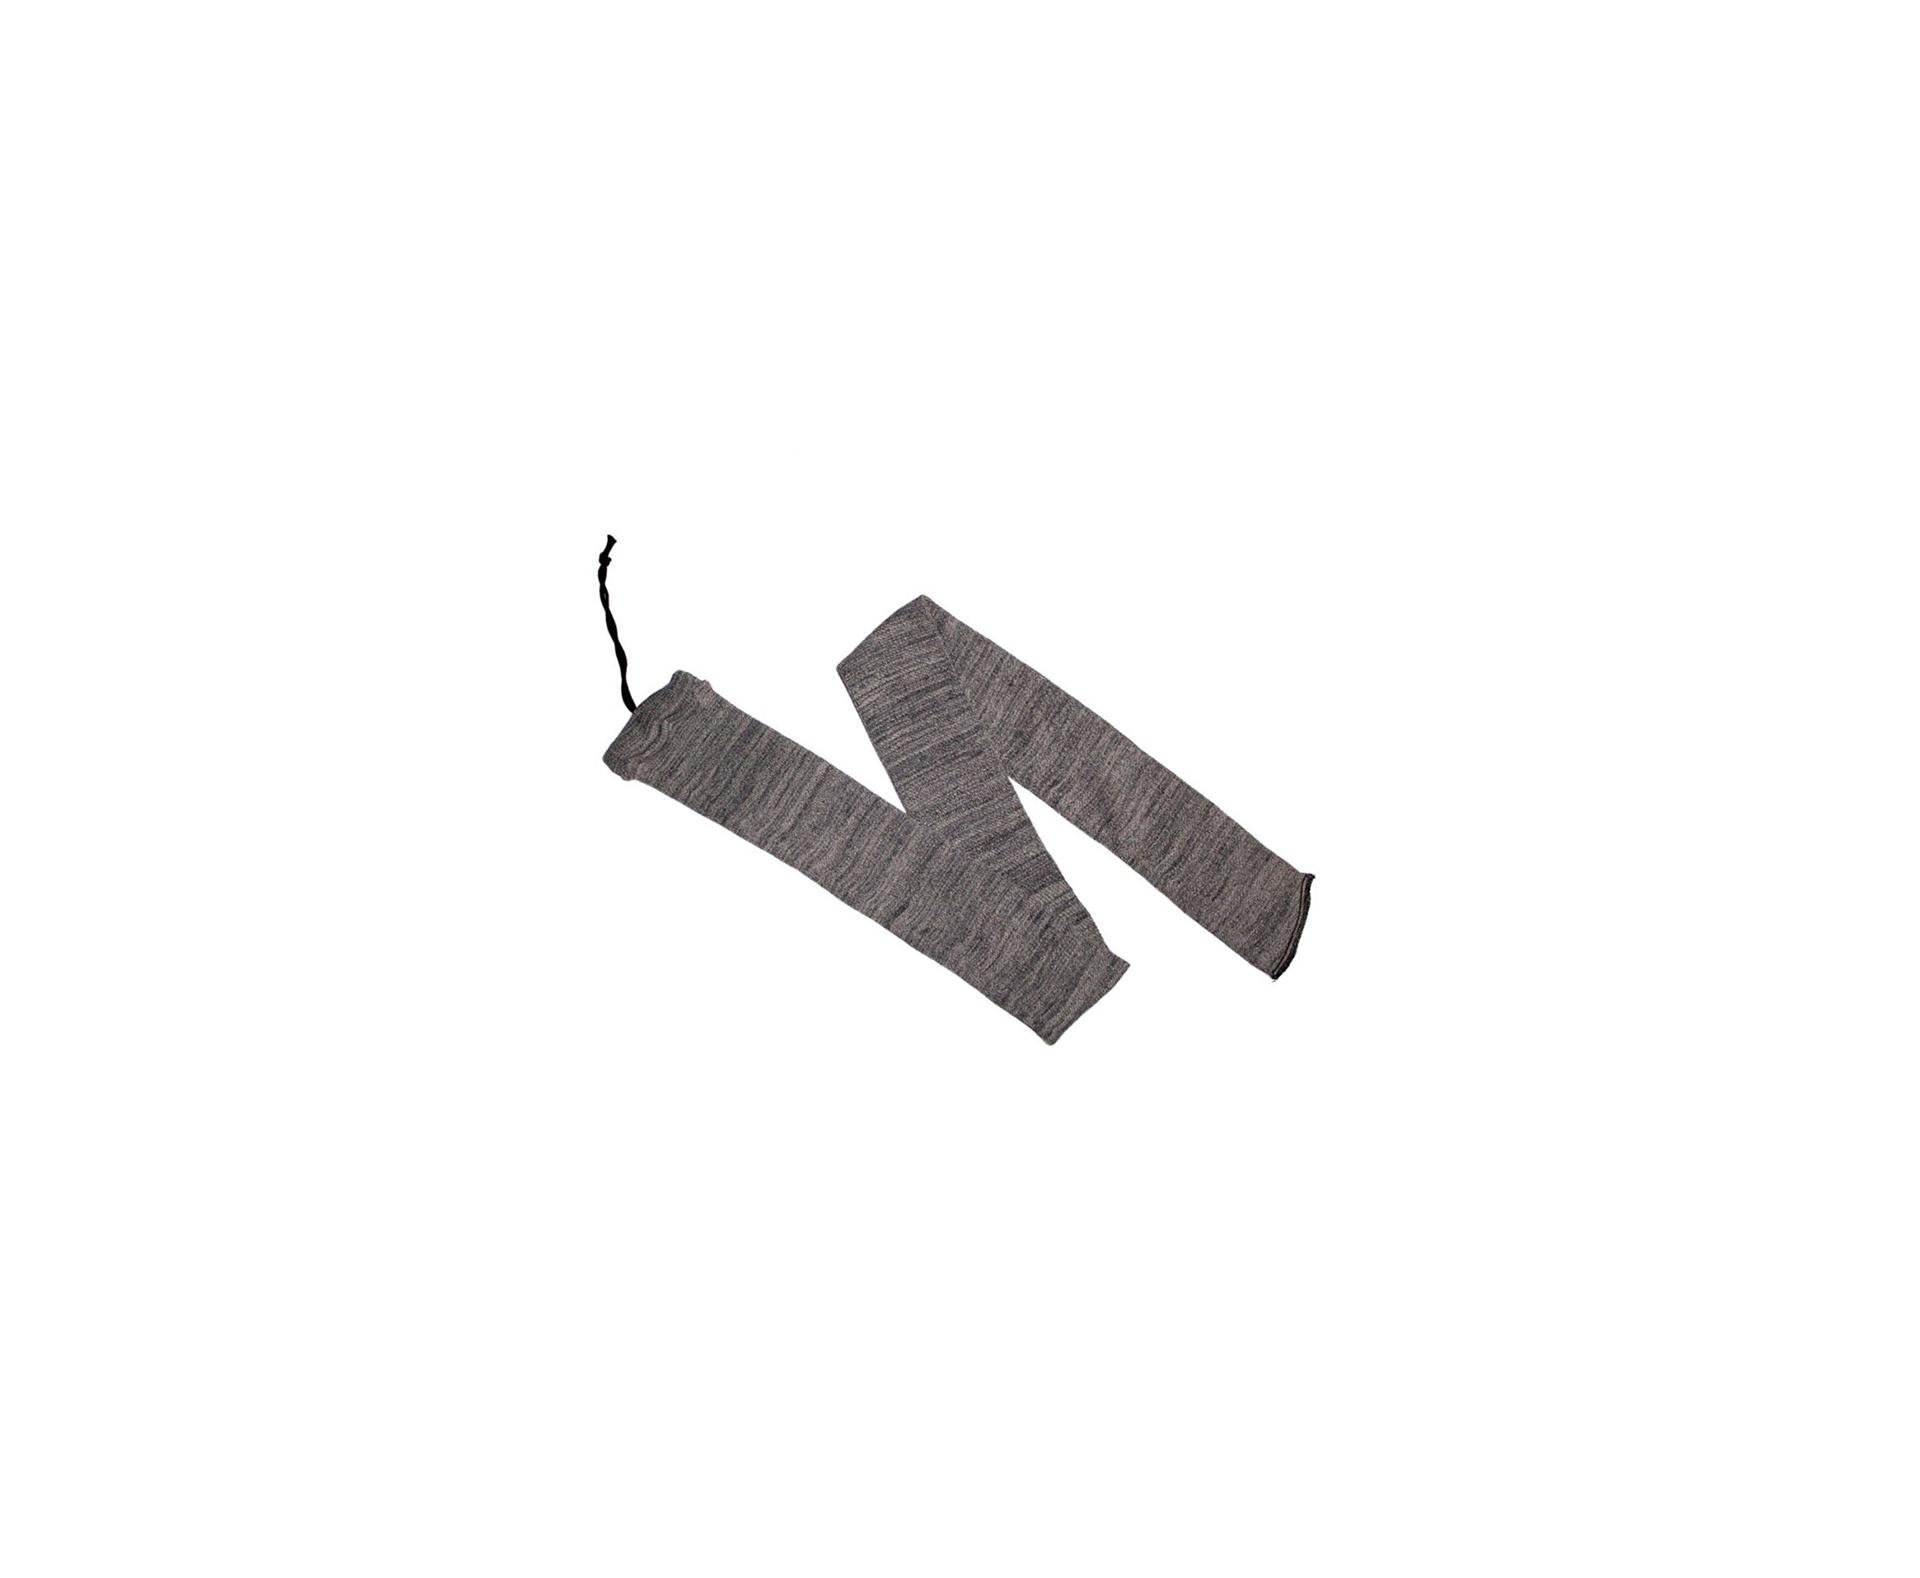 Capa Protetor Em Tecido Para Carabinas E Rifles - Cinza Escuro - Nautika